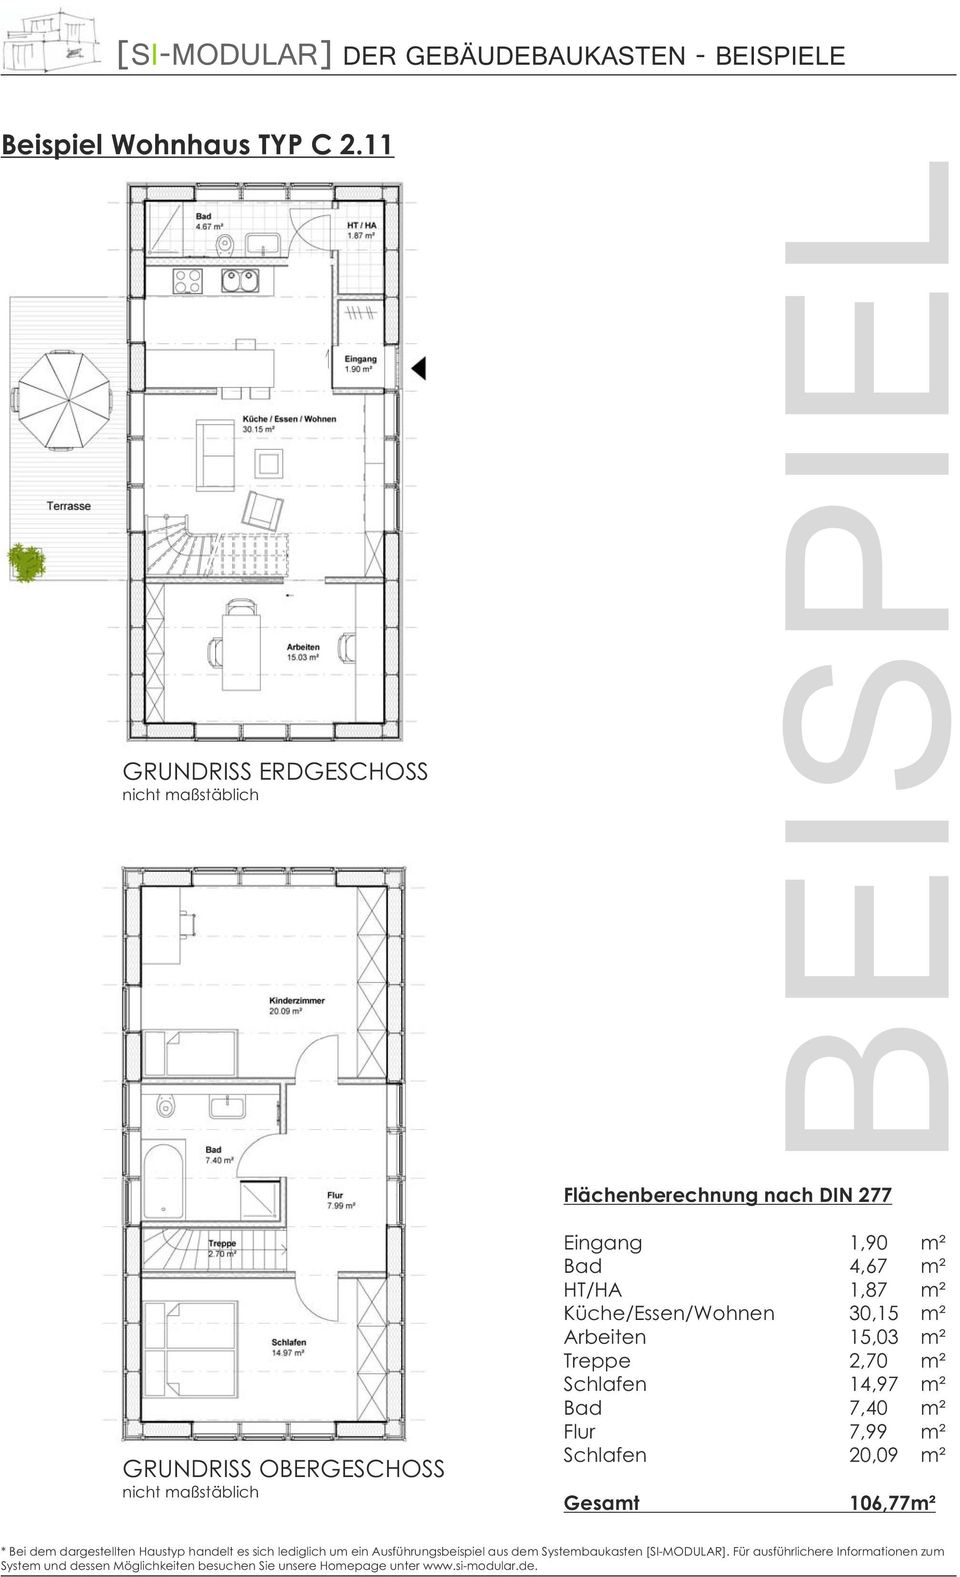 4,67 m² HT/HA 1,87 m² Küche/Essen/Wohnen 30,15 m² Arbeiten 15,03 m² Treppe 2,70 m² Schlafen 14,97 m² Bad 7,40 m² Flur 7,99 m² Schlafen 20,09 m²